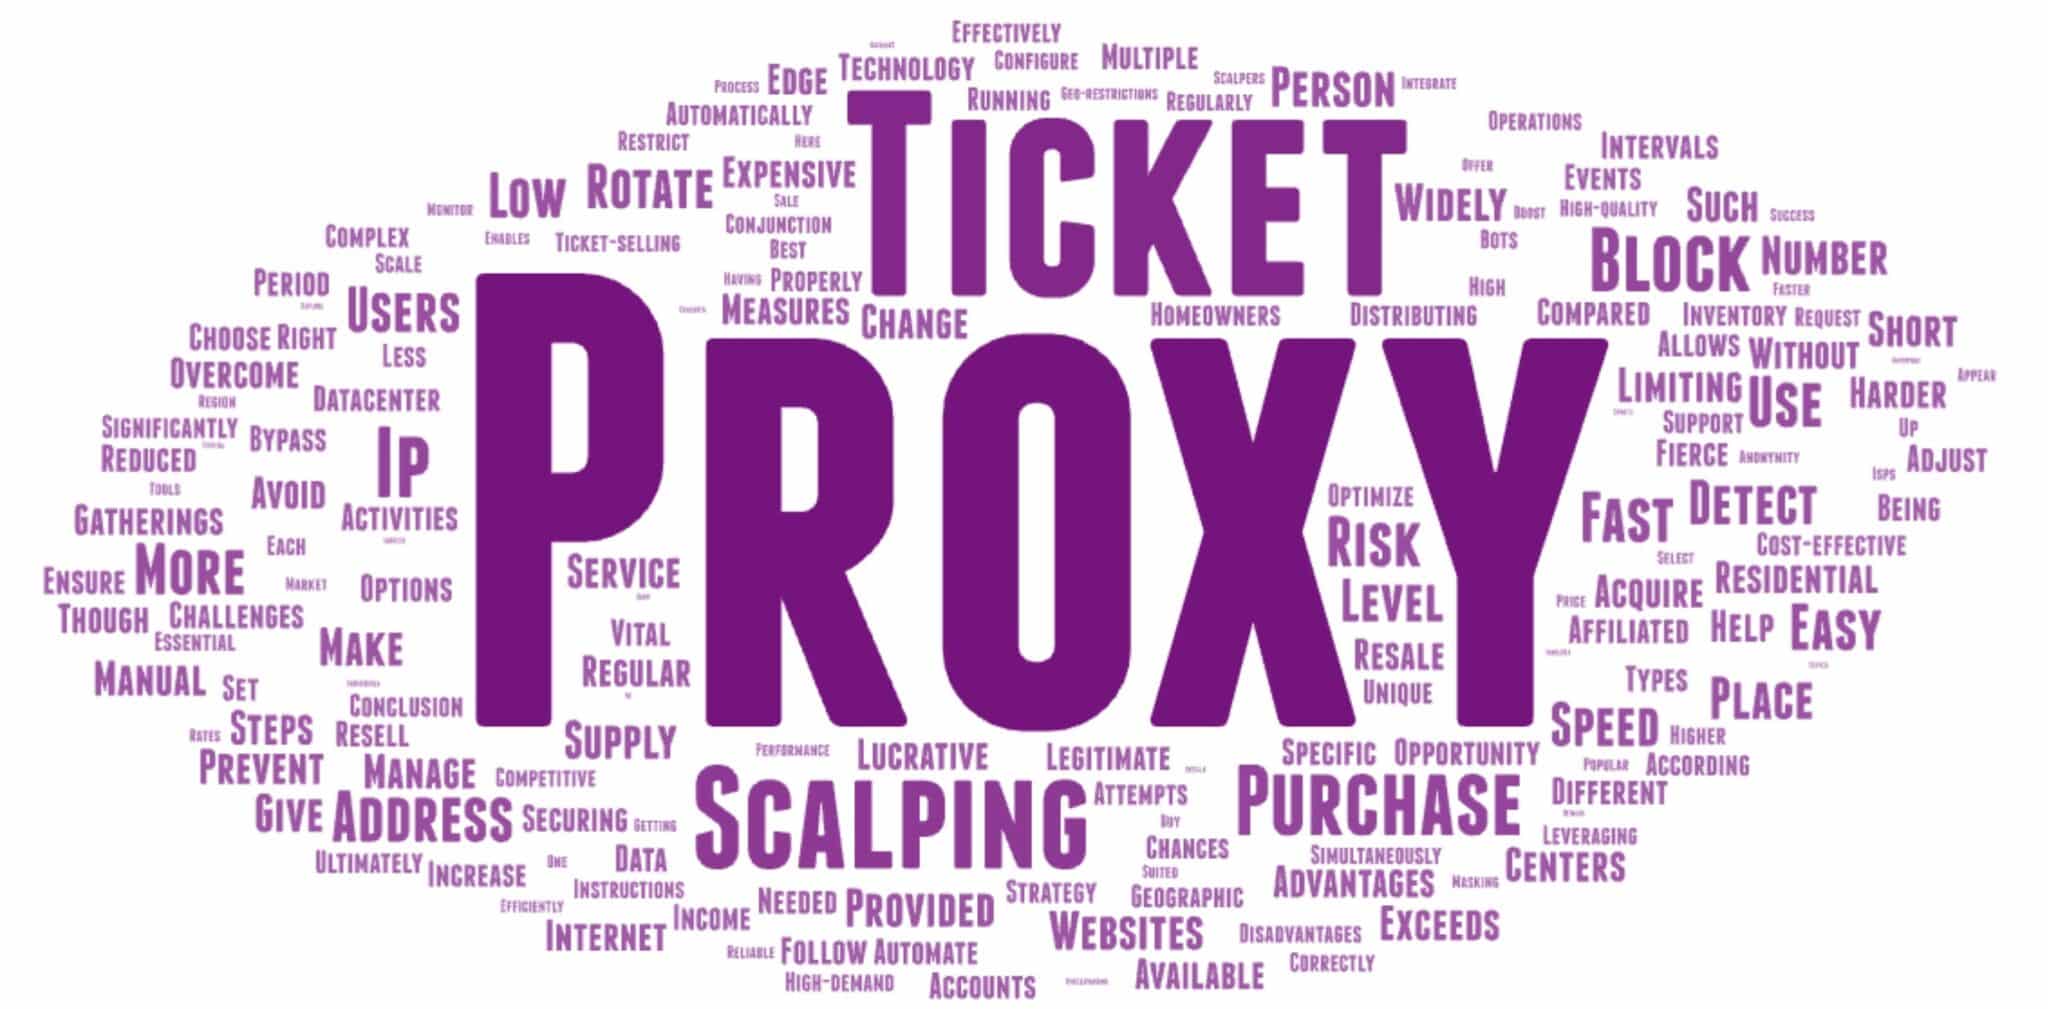 Welche Proxy-Typen eignen sich am besten für Ticket-Scalping und wie können Sie dadurch Ihre Einnahmen steigern?